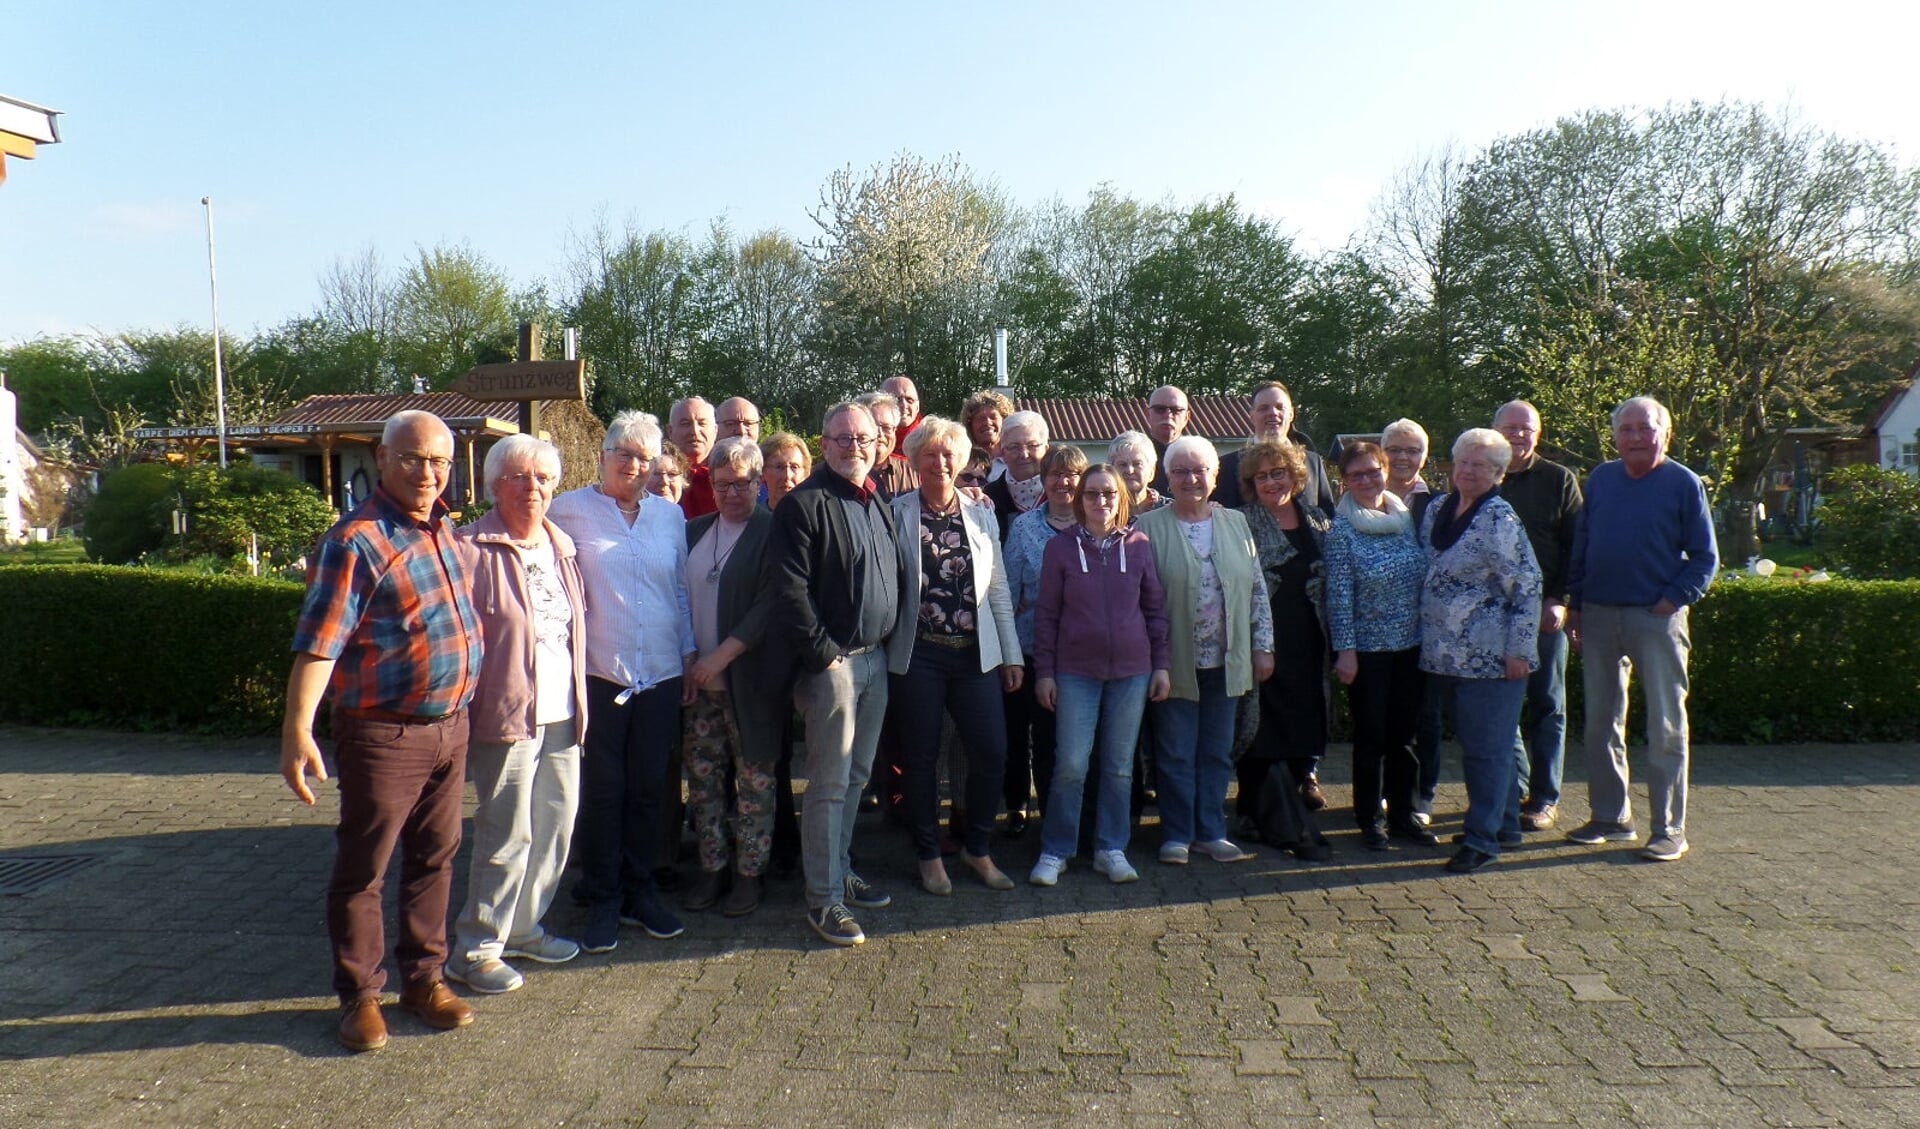 Op uitnodiging van de SPD afdeling Bergkamen bracht een afvaardiging van de PvdA afdeling Goeree-Overflakkee een bezoek aan de Landdag.